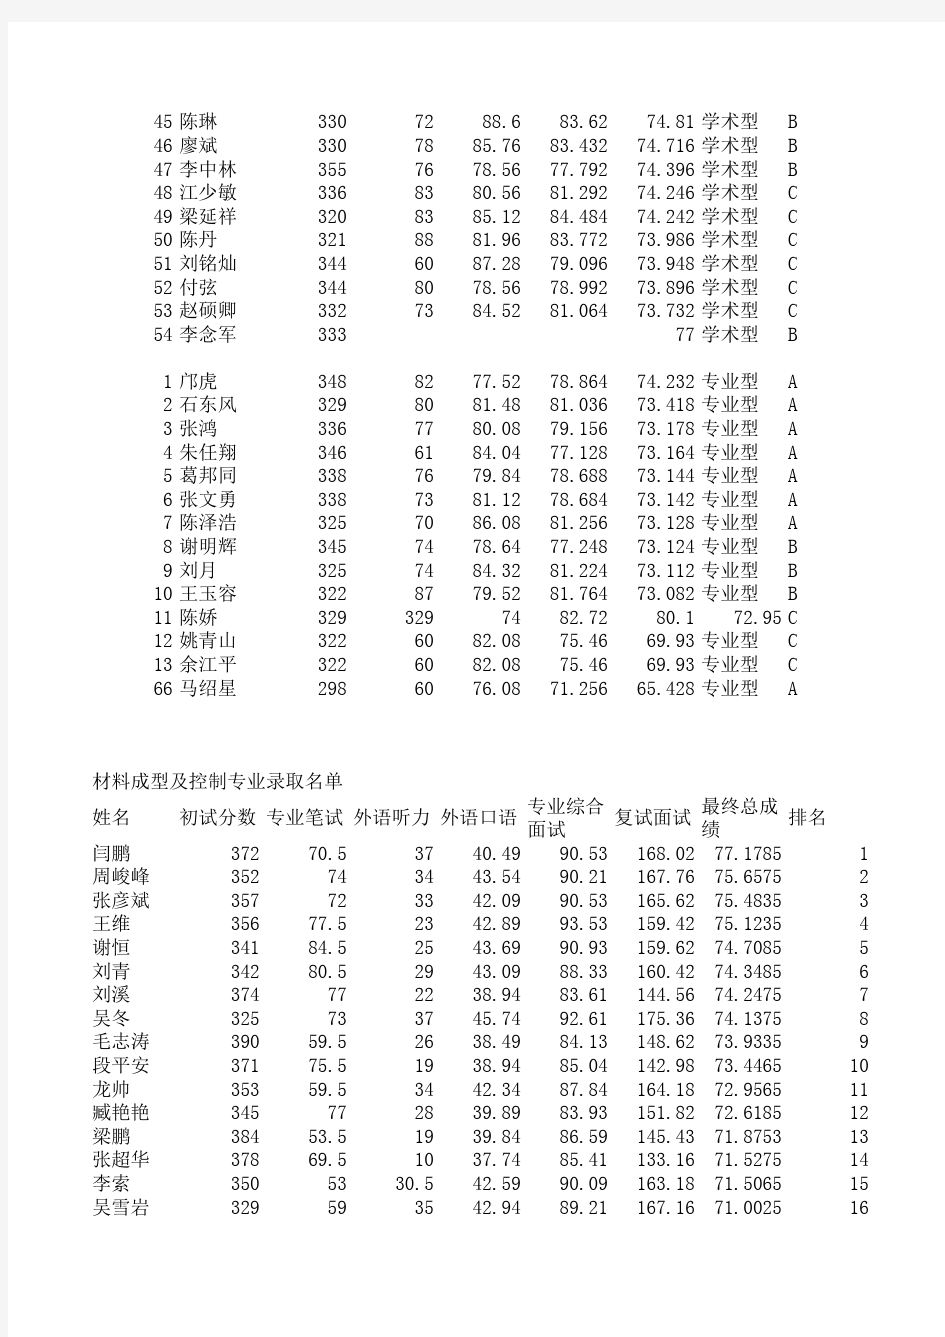 2014重庆大学材料学院录取名单